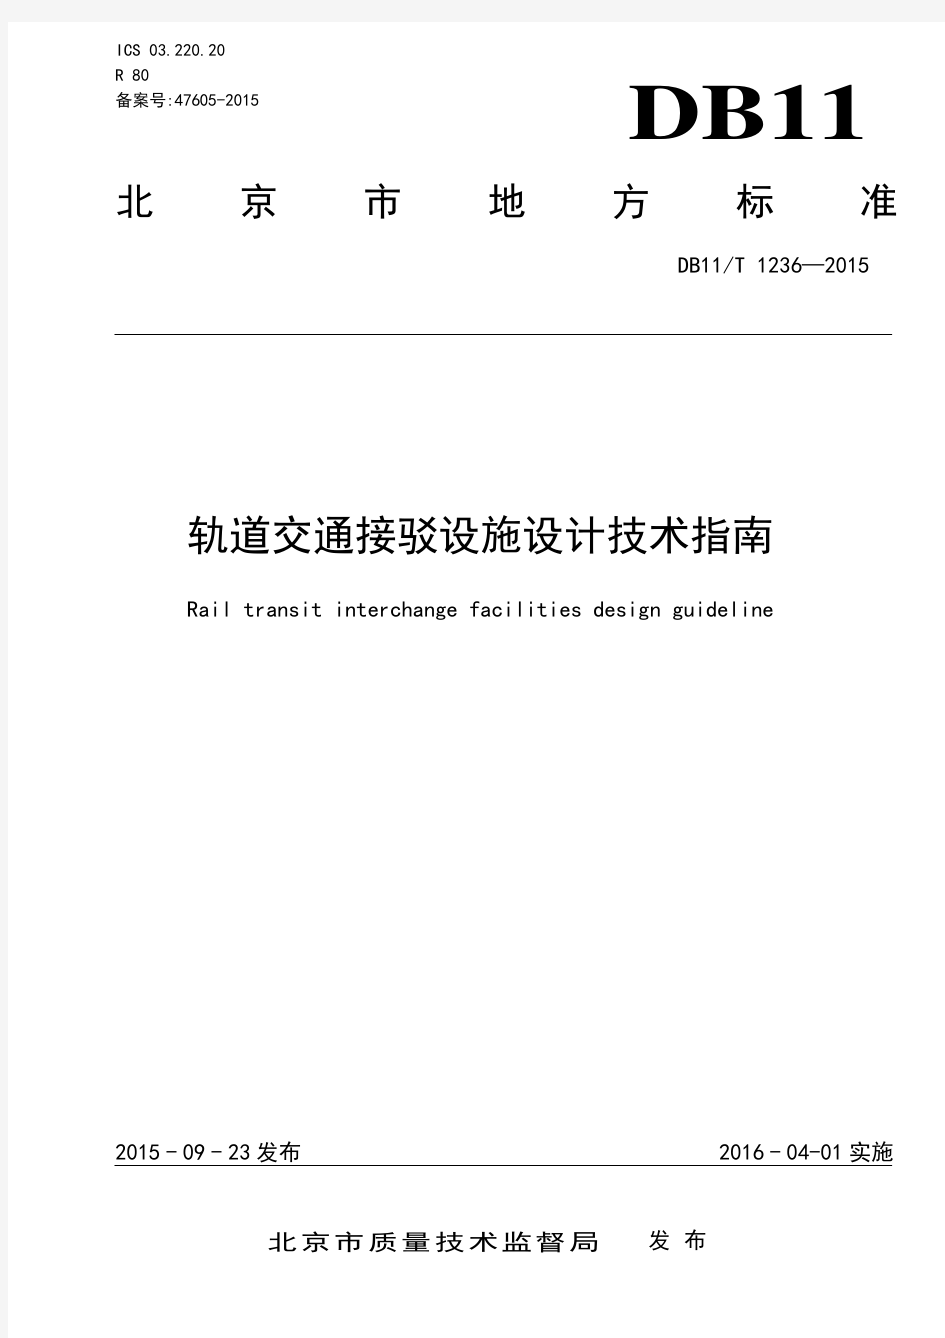 北京市轨道交通接驳设施设计技术指南